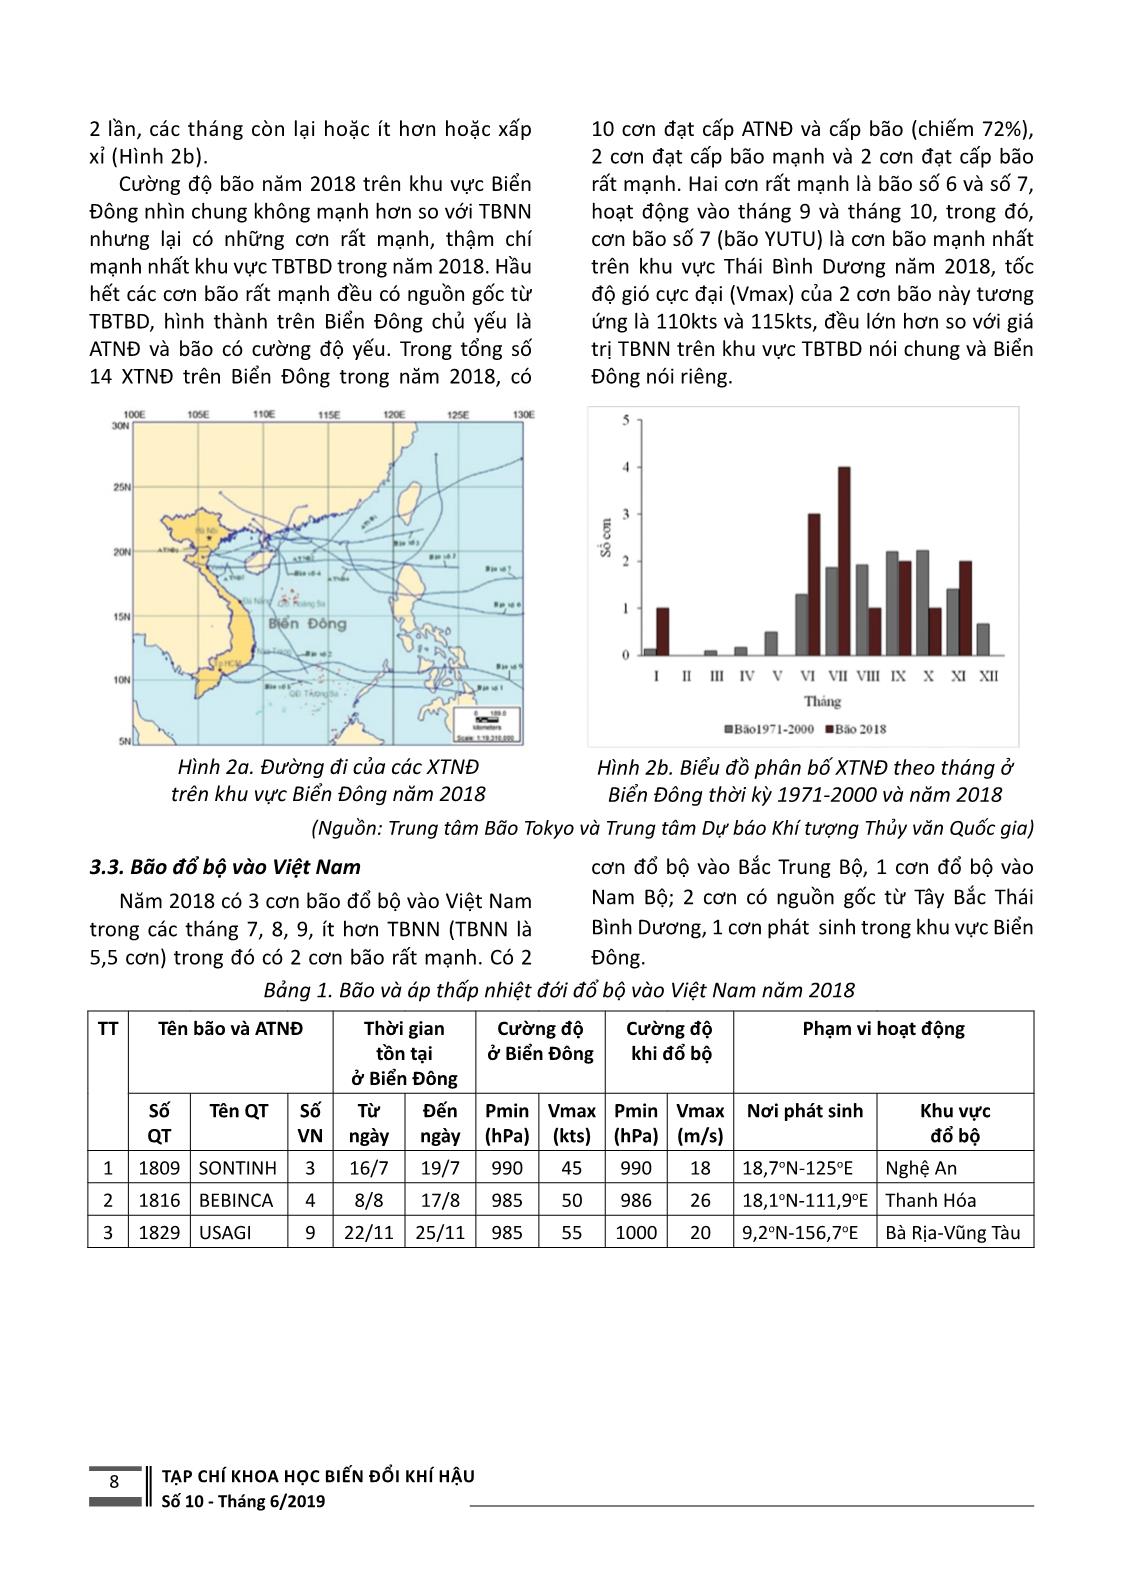 Đặc điểm hoạt động của xoáy thuận nhiệt đới ở Tây Bắc Thái Bình Dương, biển Đông và đổ bộ vào Việt Nam năm 2018 trang 3